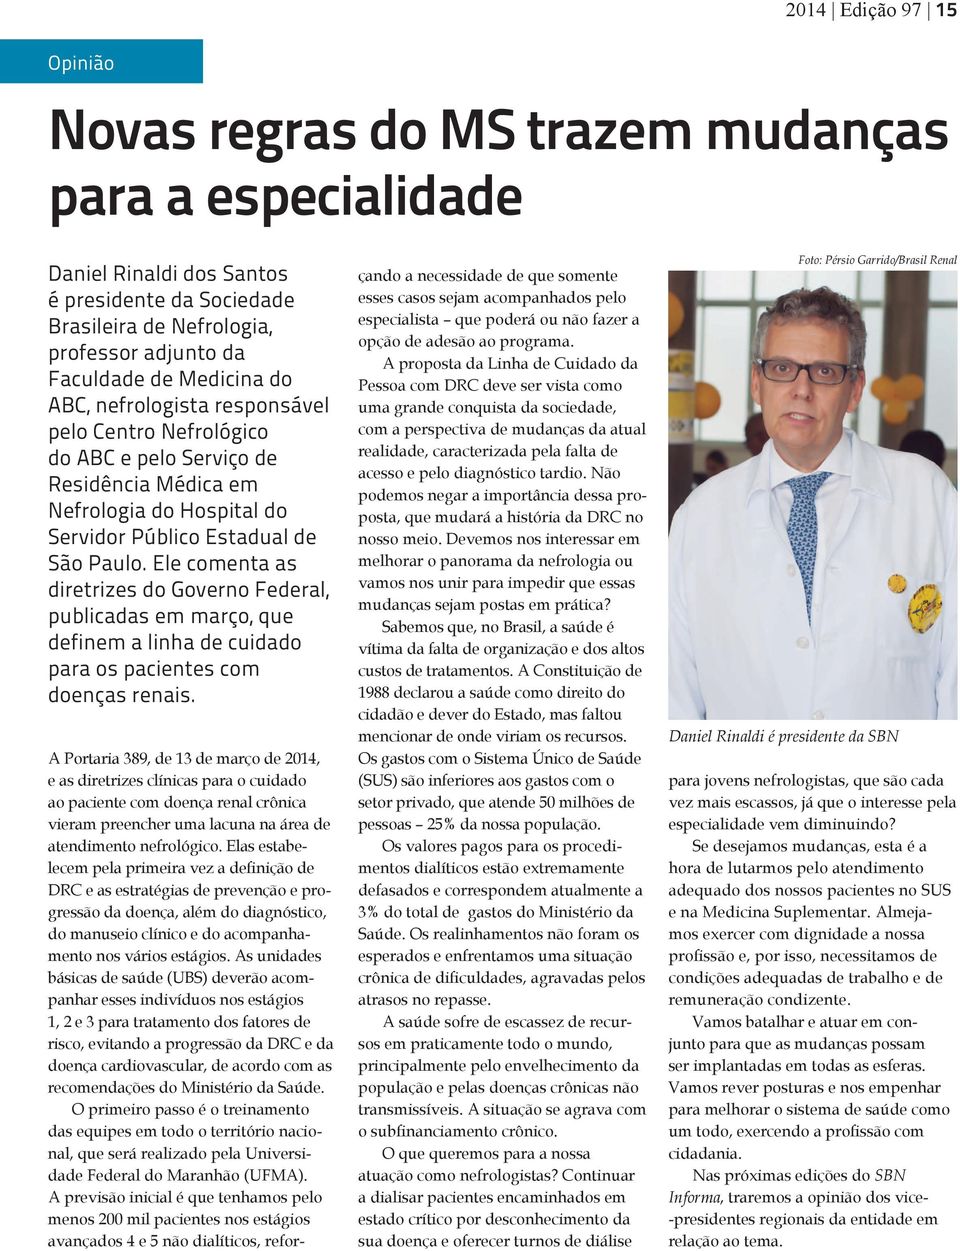 Ele comenta as diretrizes do Governo Federal, publicadas em março, que definem a linha de cuidado para os pacientes com doenças renais.